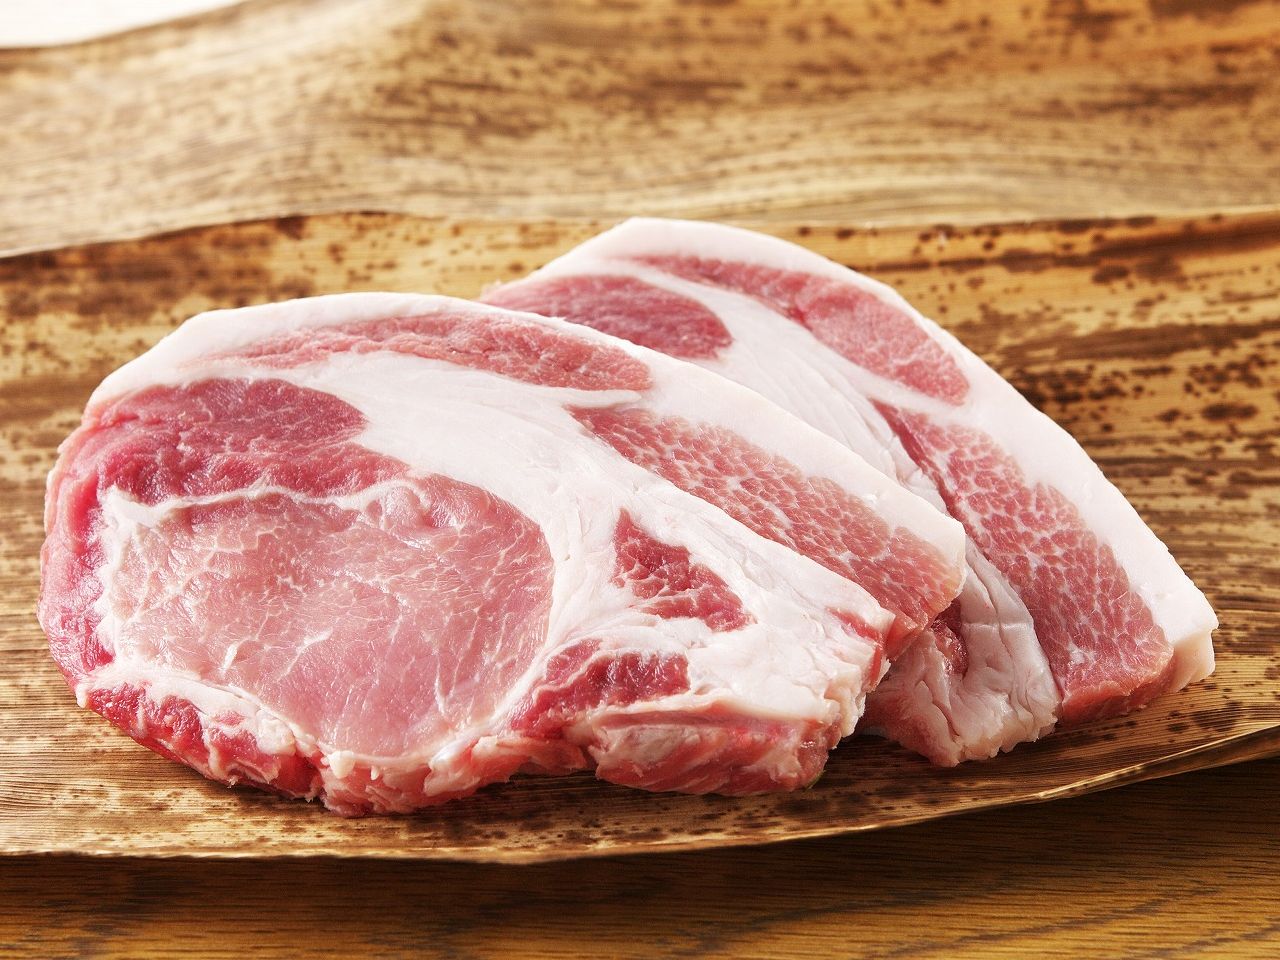 米澤豚一番育ちのロース肉 トンカツ・トンテキ用 / 美味しい山形県産の三元豚画像